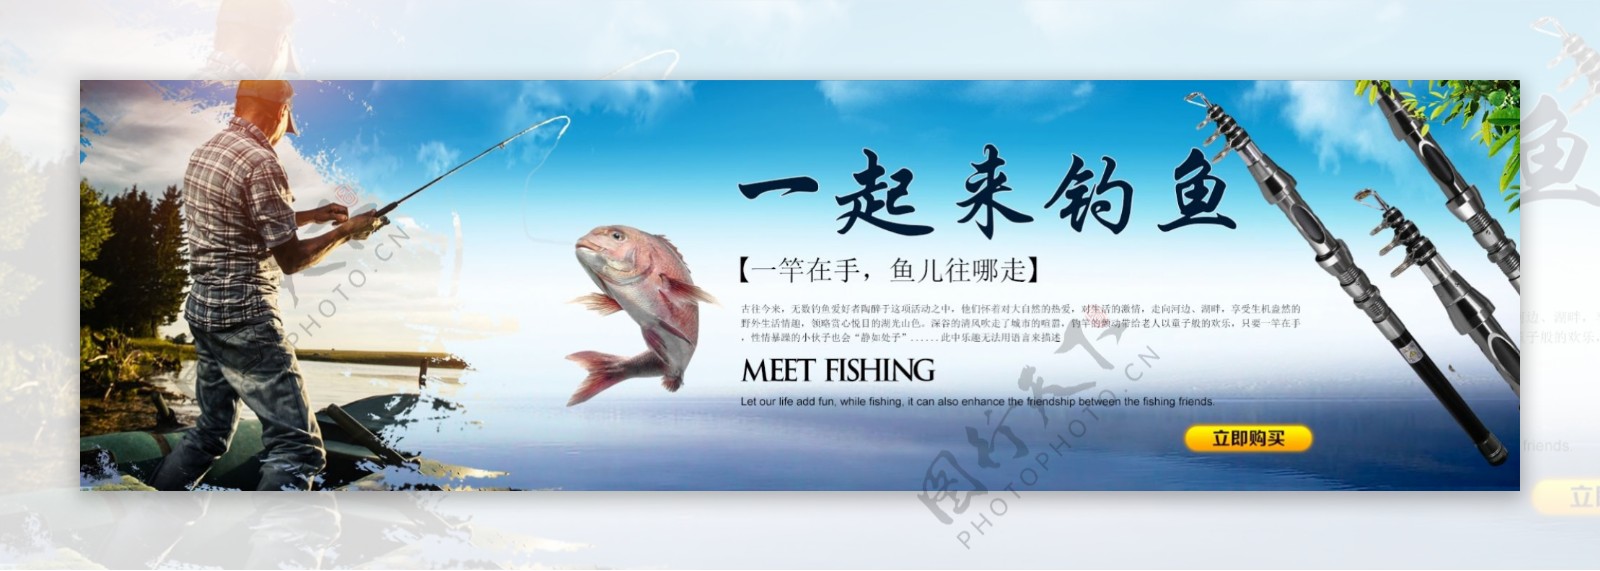 鱼竿海报设计渔具海报